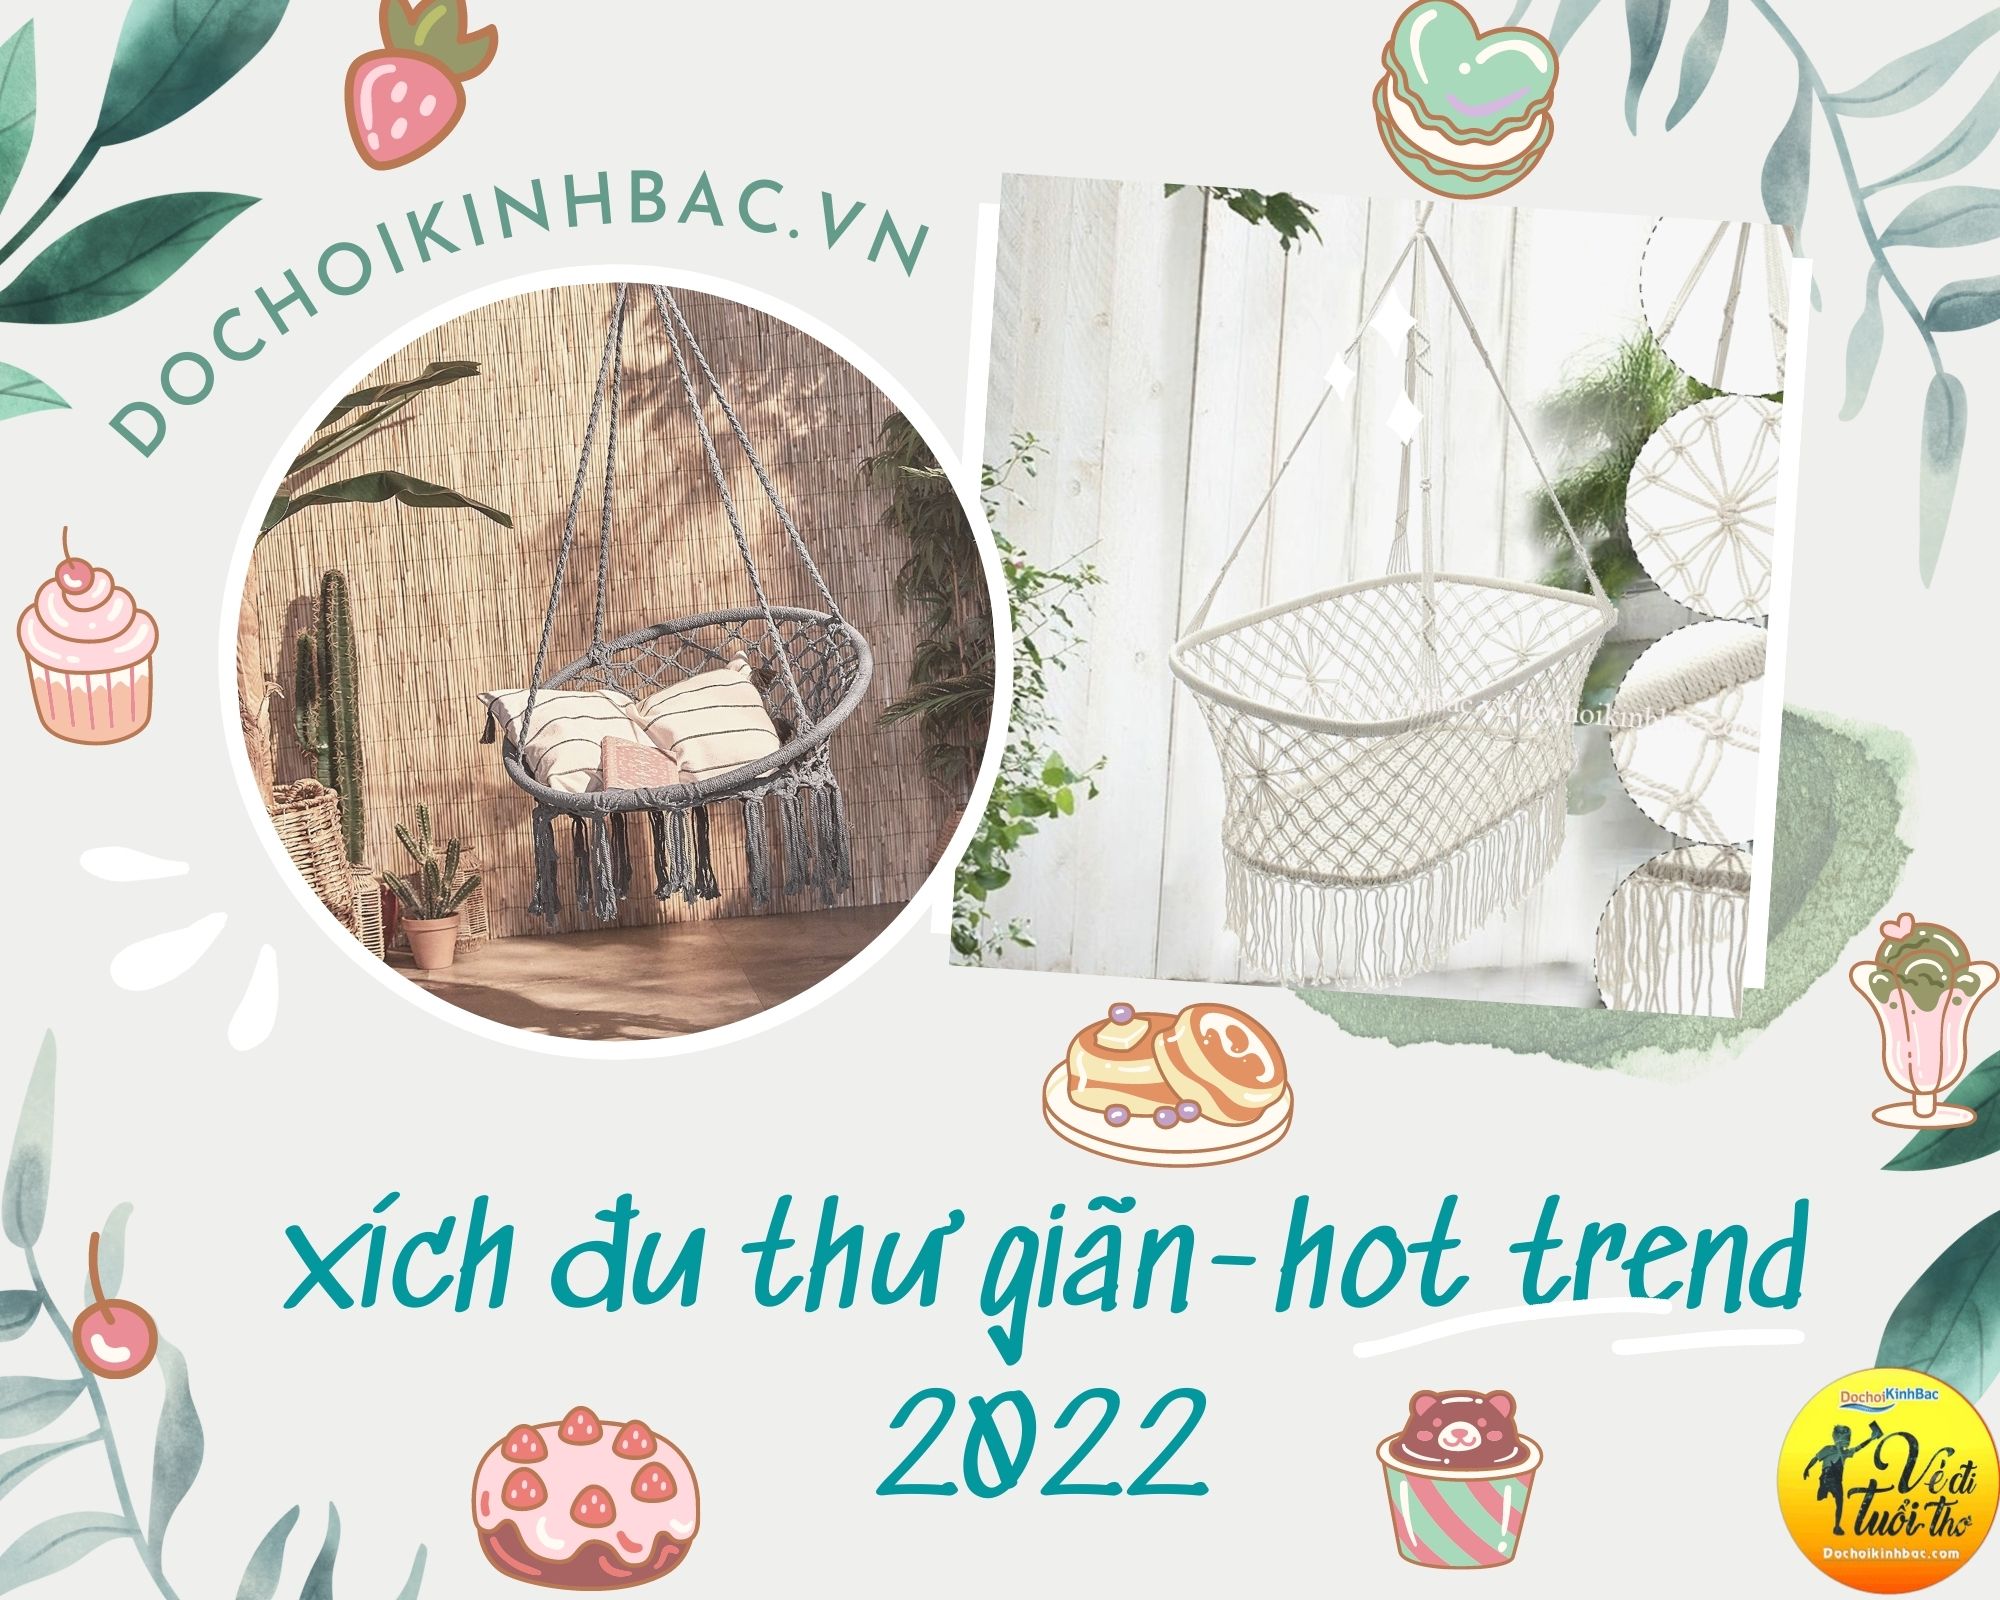 Xích đu thư giãn – lựa chọn bắt trend mới nhất 2022 tại Thị trấn Mường Khương, Mường Khương, Lào Cai